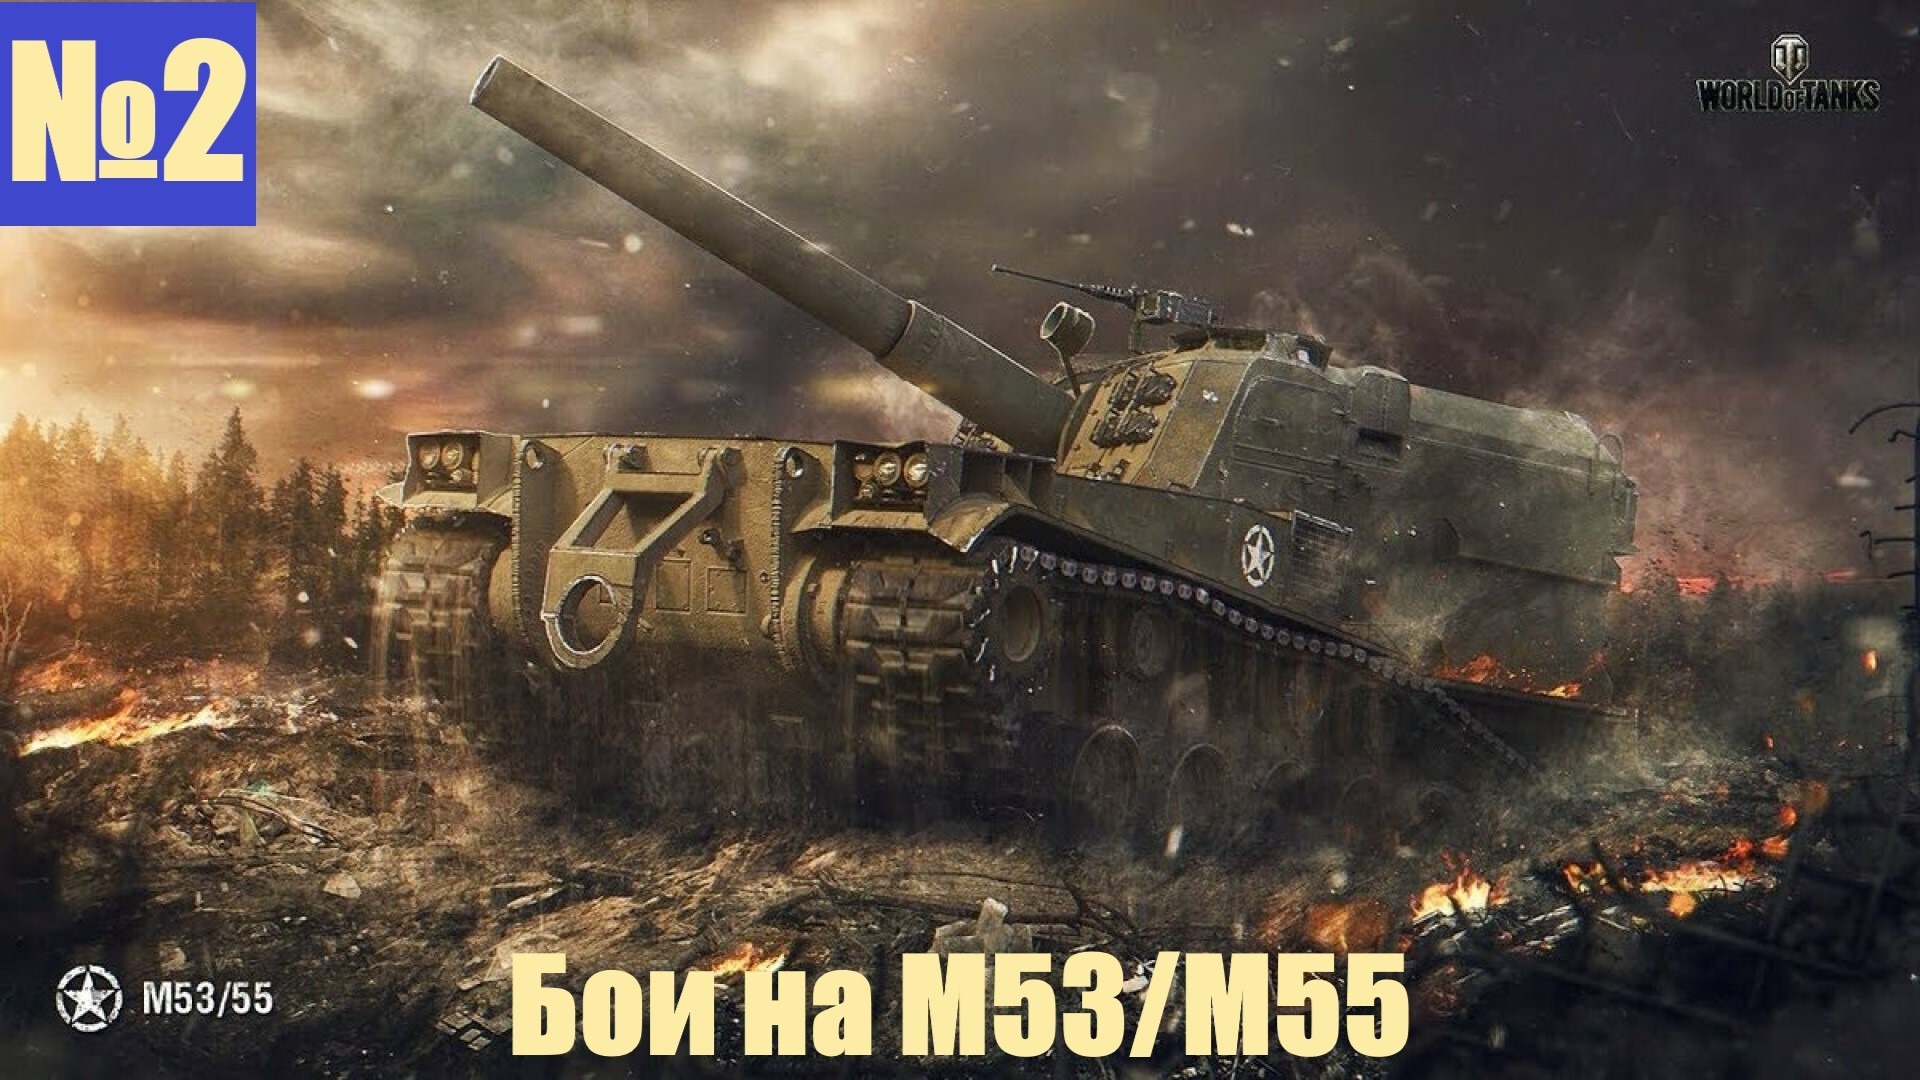 Мир танков лбз. САУ m53/m55. Артиллерия м53 м55. M53/m55. Арта м53/55 World of Tanks.